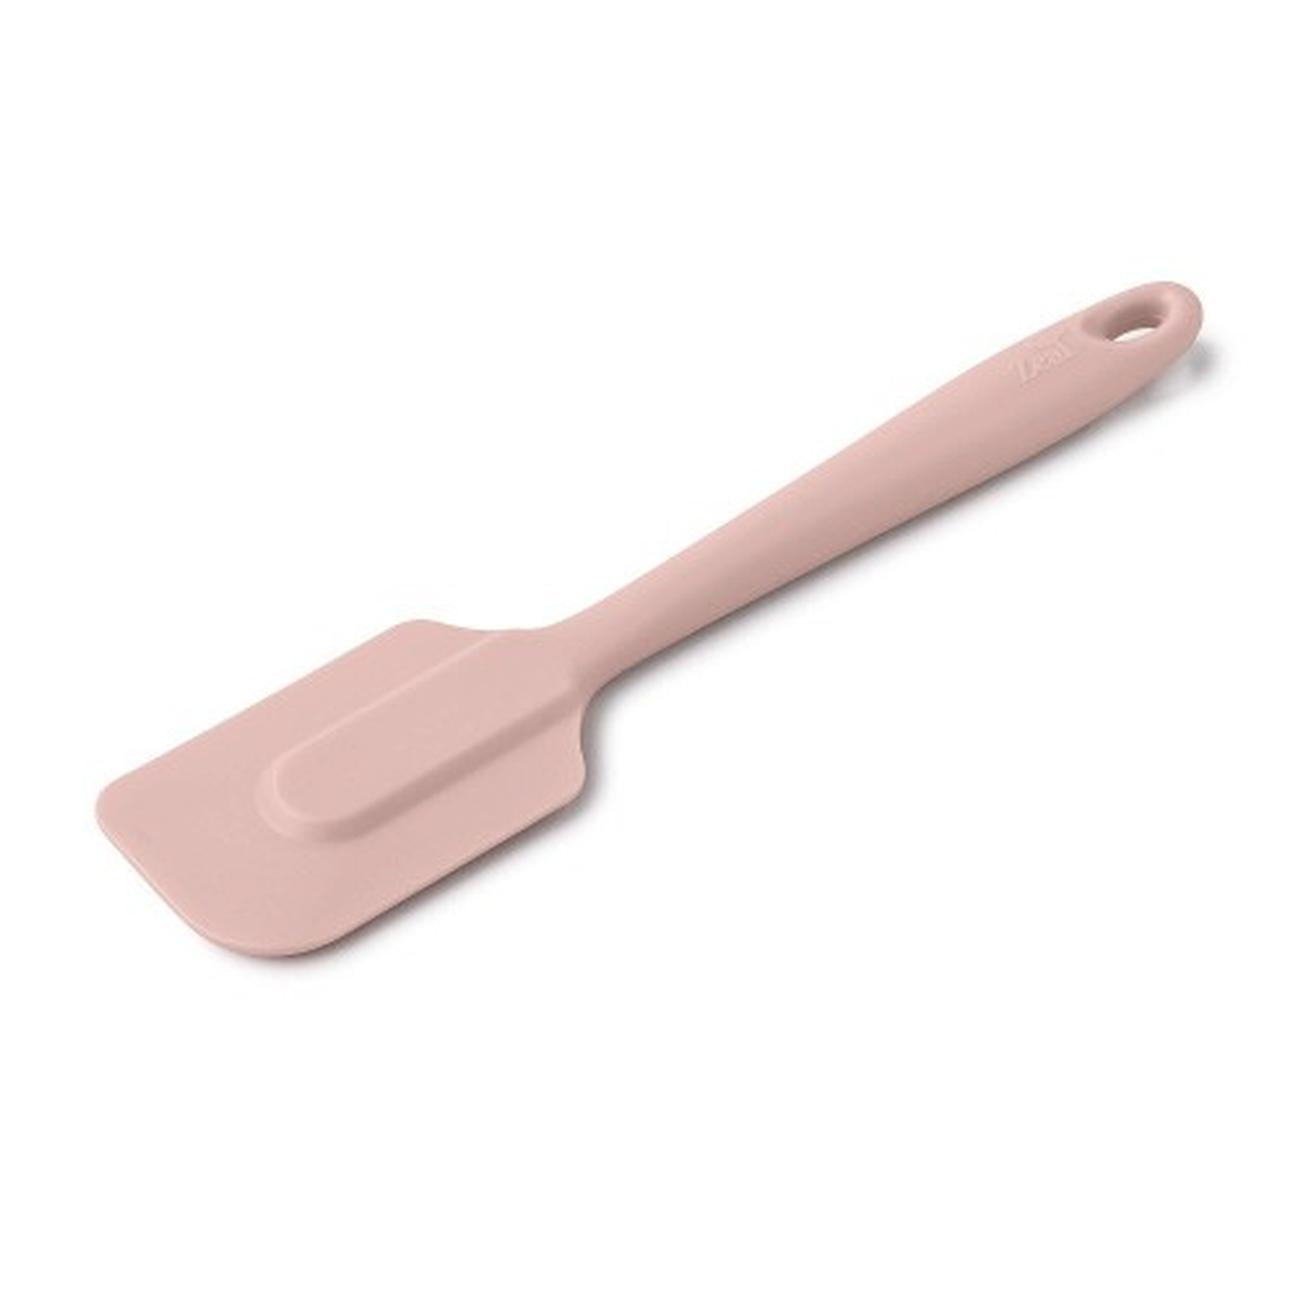 zeal-silicone-non-stick-spatula-large-cream - Zeal Silicone Spatula Large 